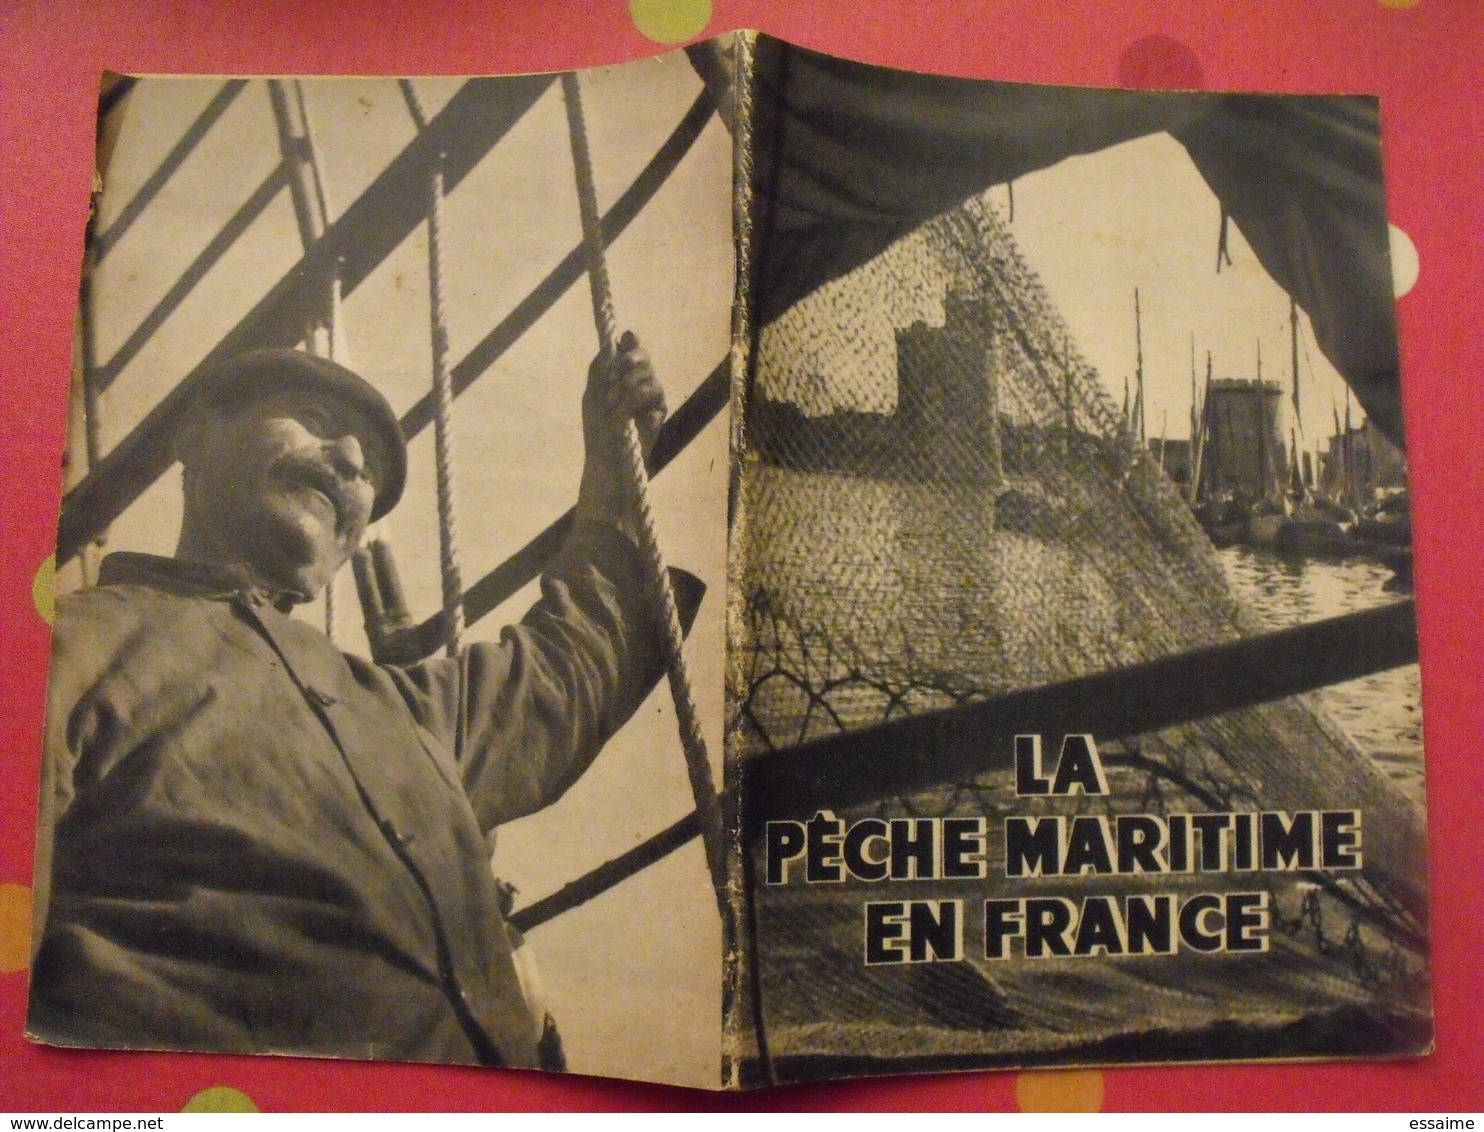 La Pêche Maritime En France. Domentation Française Illustrée 1949. Photos. - Chasse/Pêche